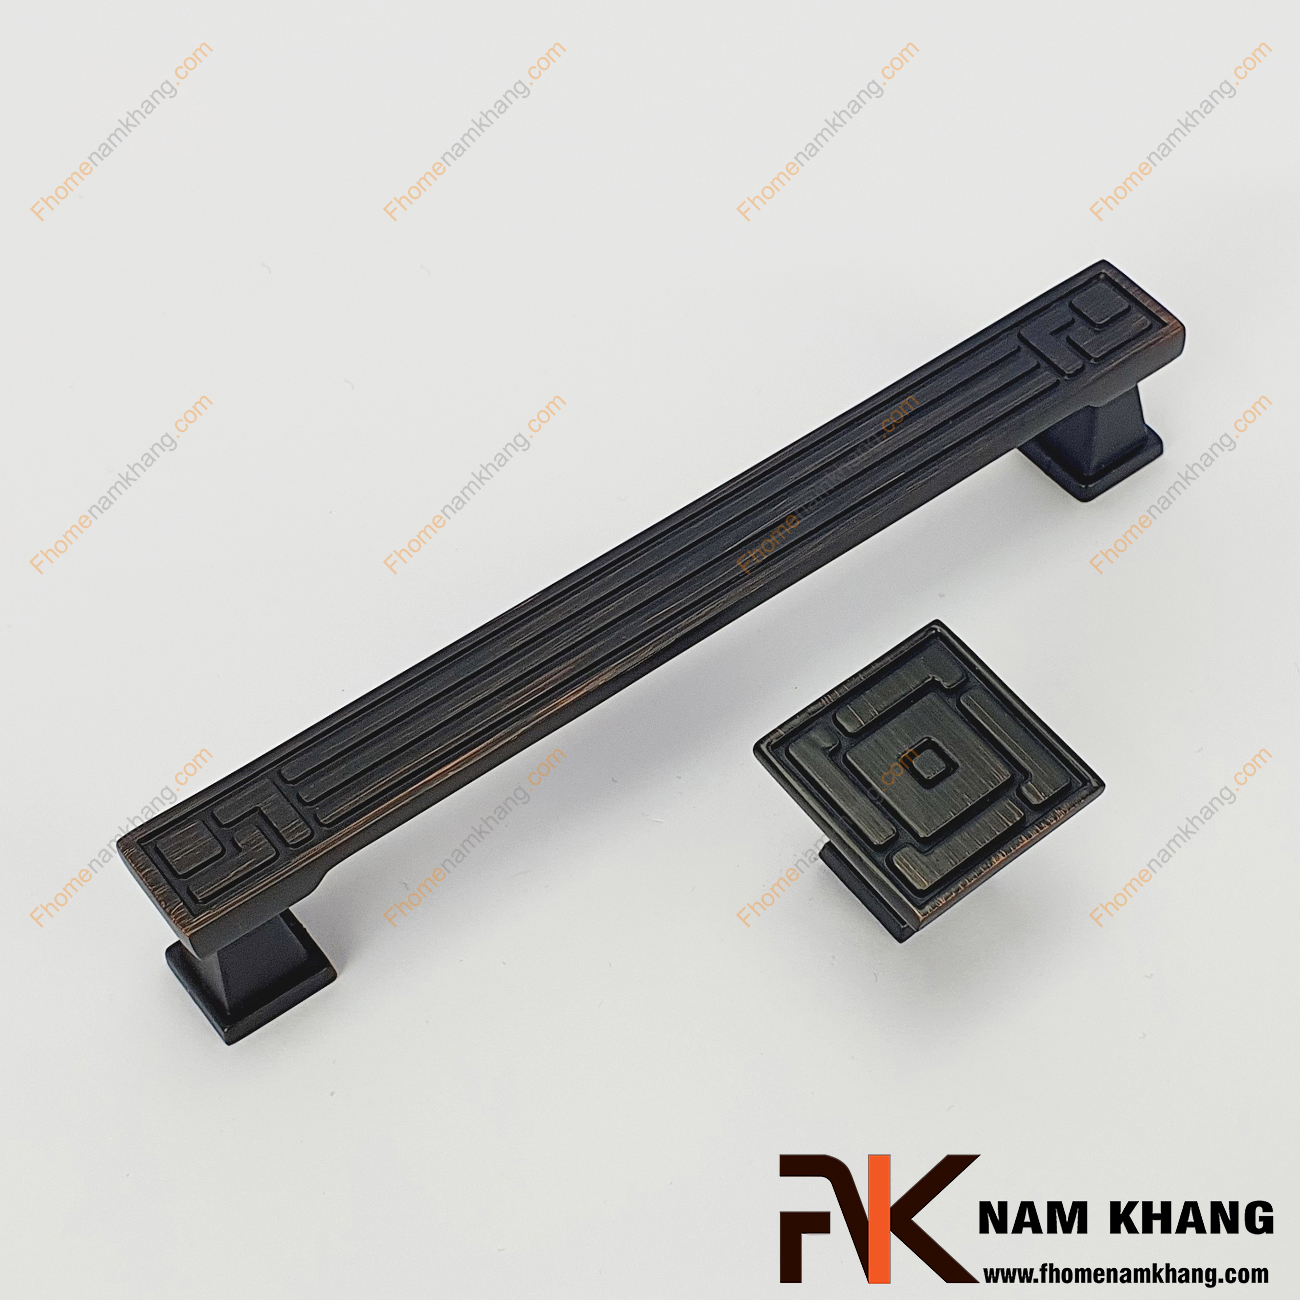 Tay nắm tủ cổ điển màu đen viền hồng NK289-DH có dạng vuông được thiết kế dựa trên hợp kim chất lượng khuôn dạng vuông tạo cảm giác cầm nắm vô cùng chắc chắn và thao tác thực hiện cũng vô cùng dễ dàng.